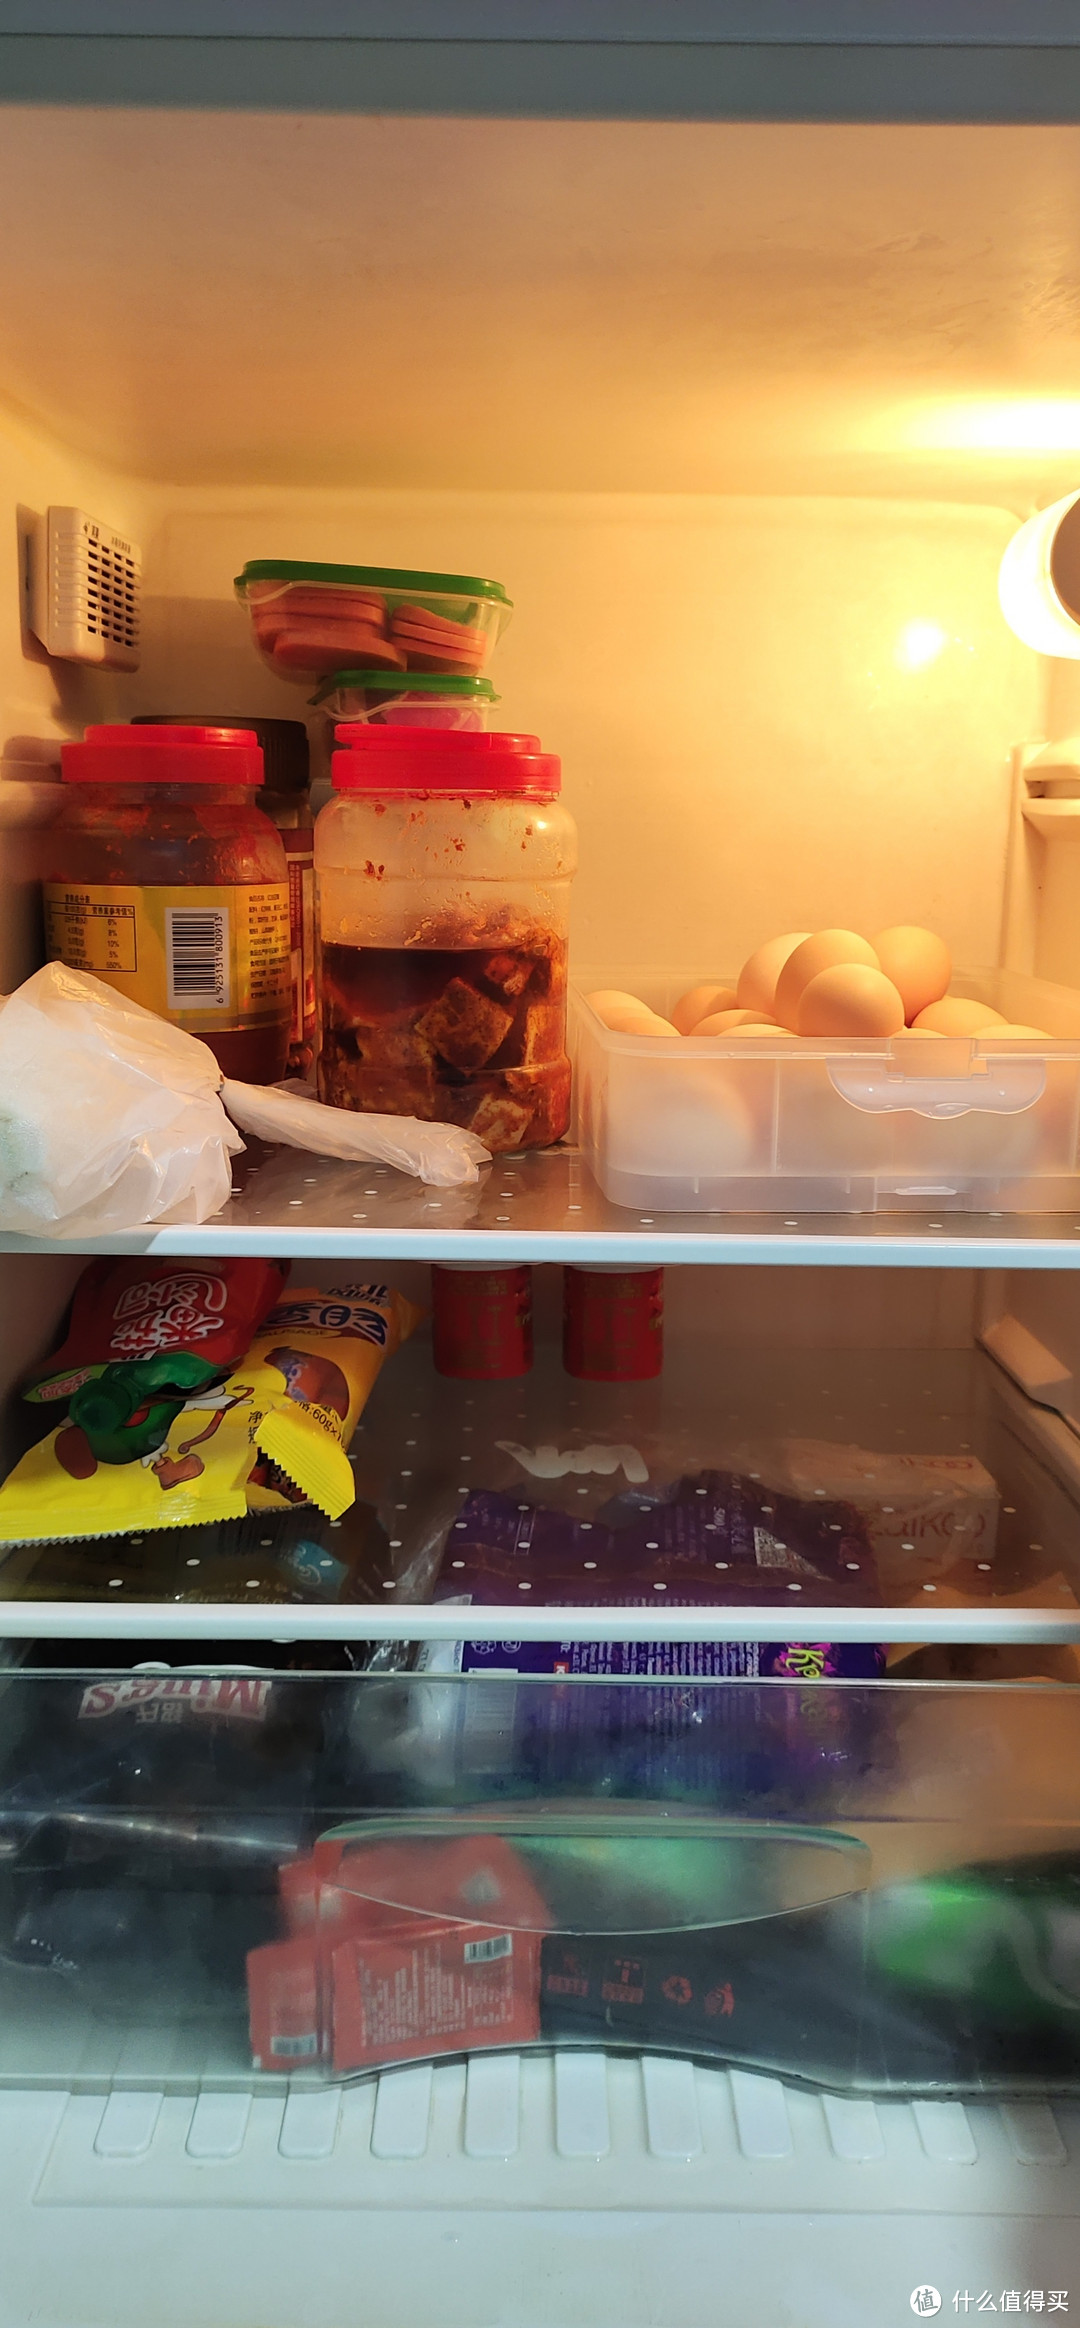 一款让病菌无处可逃的冰箱除味器-EraClean